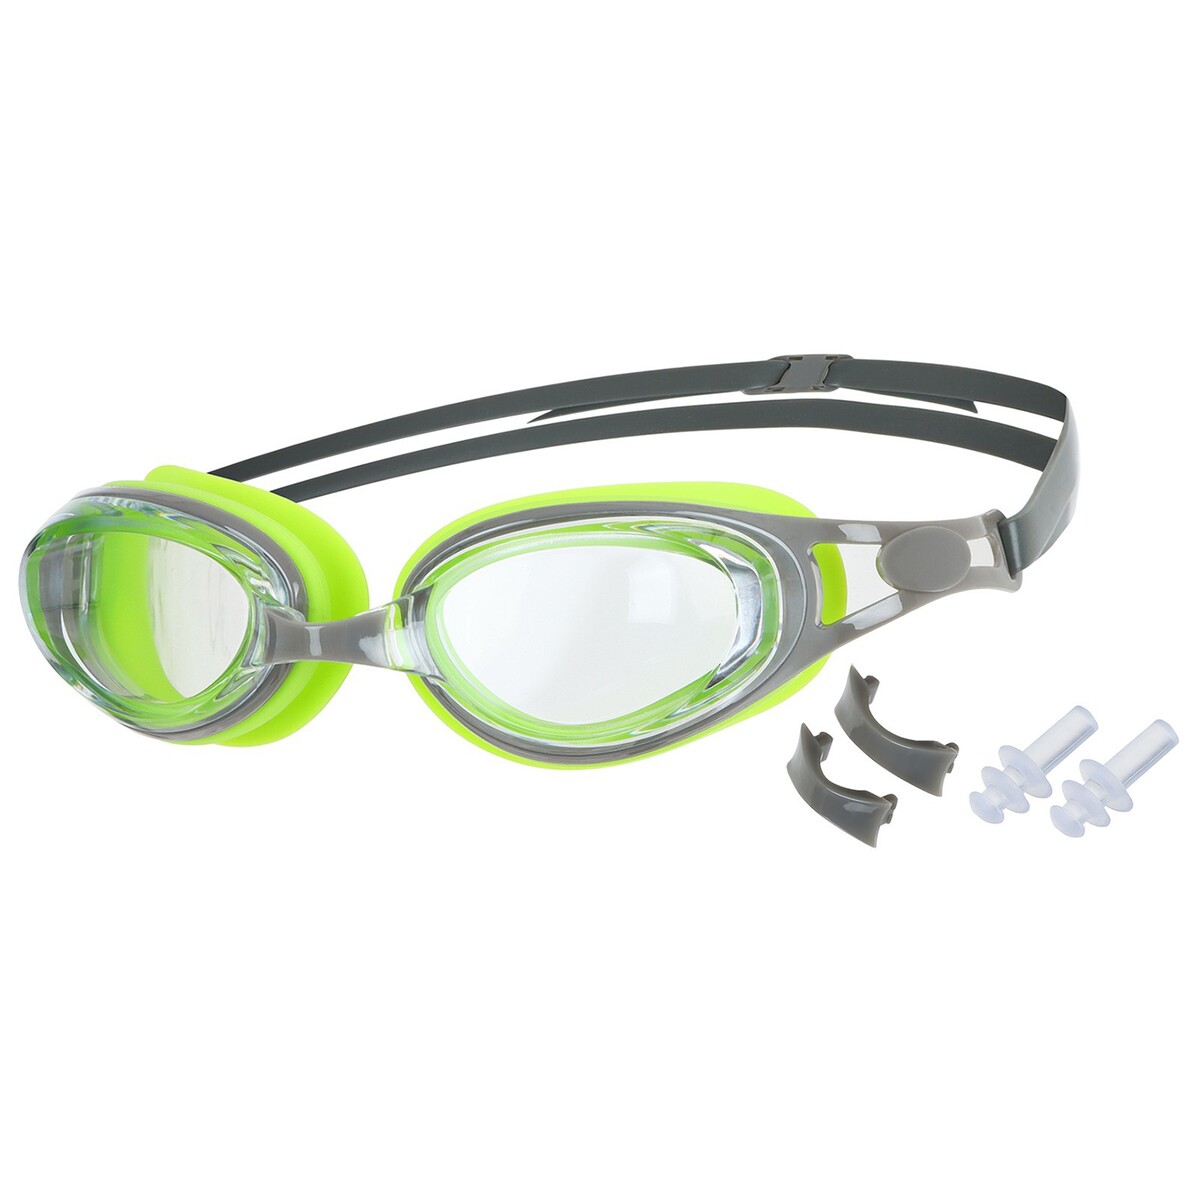 Очки для плавания onlytop, беруши, набор носовых перемычек, uv защита набор для плавания взрослый onlytop очки беруши шапочка обхват 54 60 см